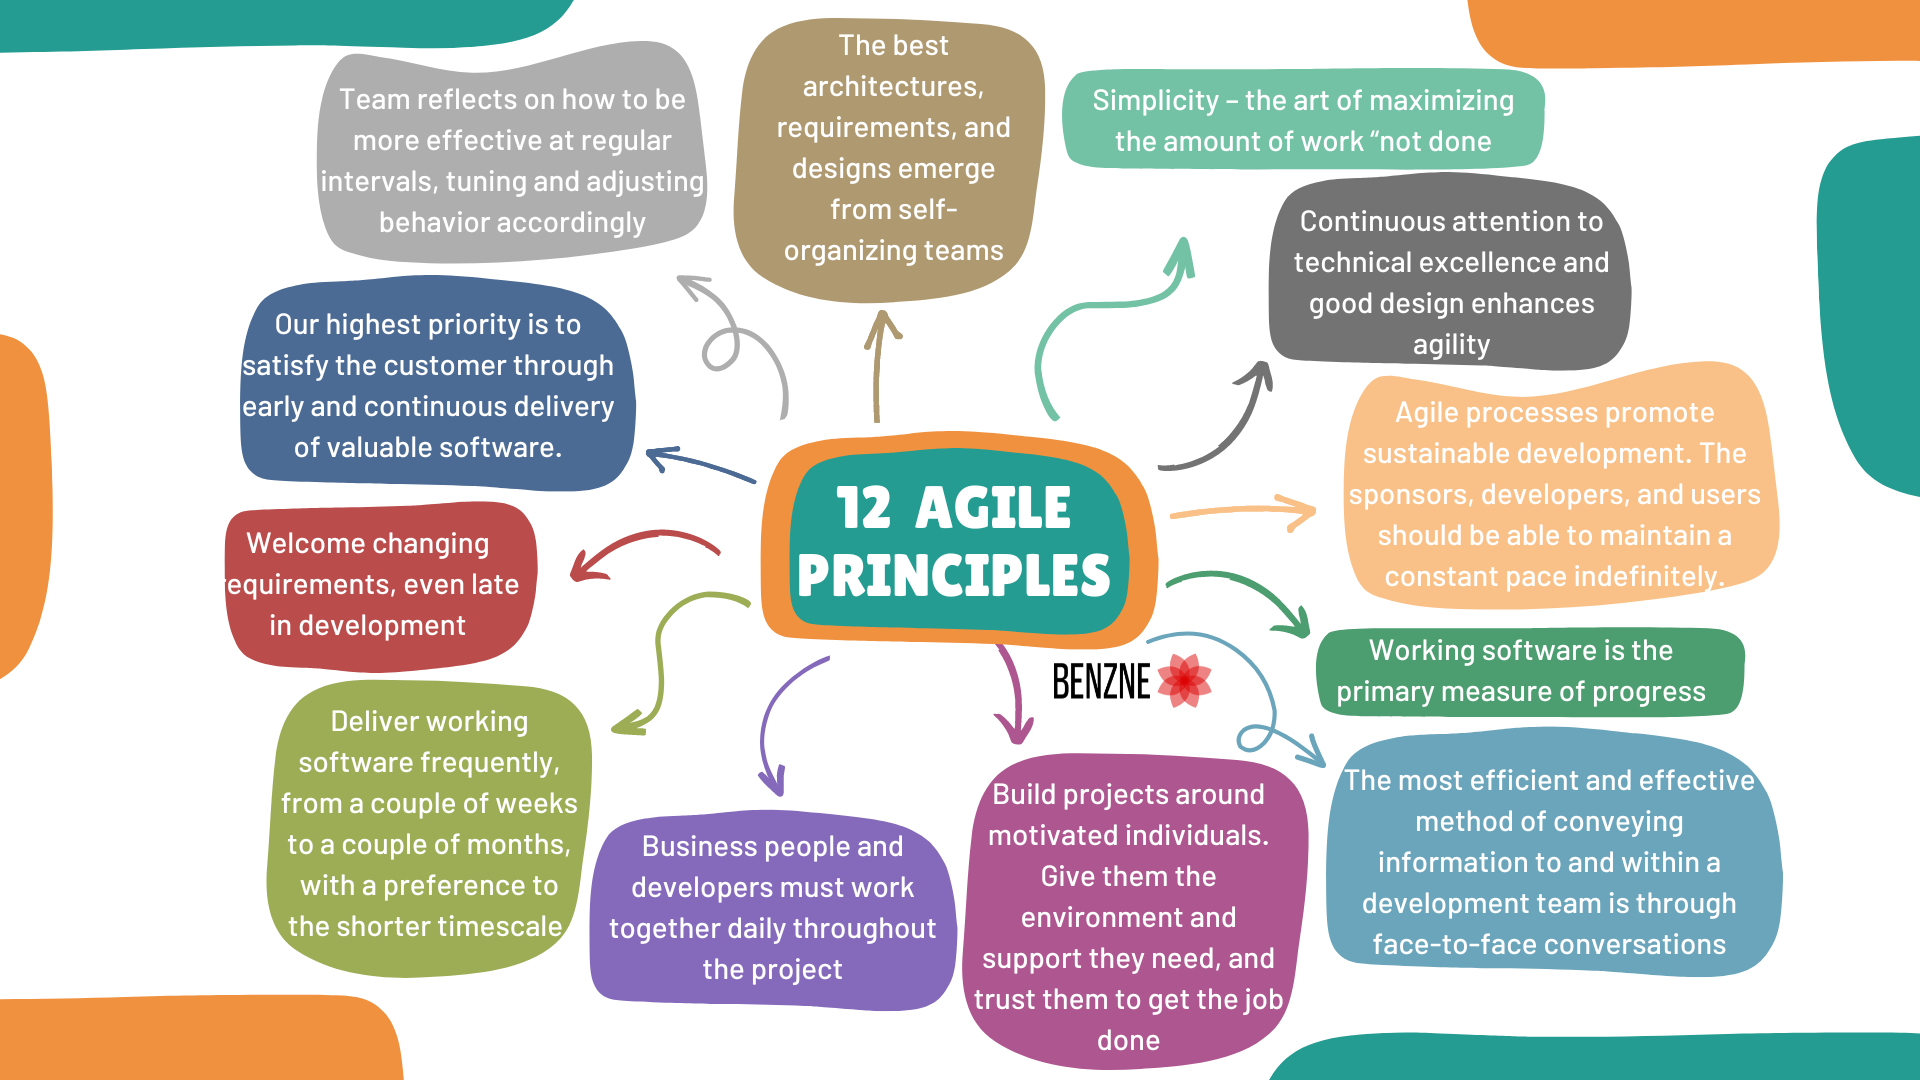 12 Agile principles